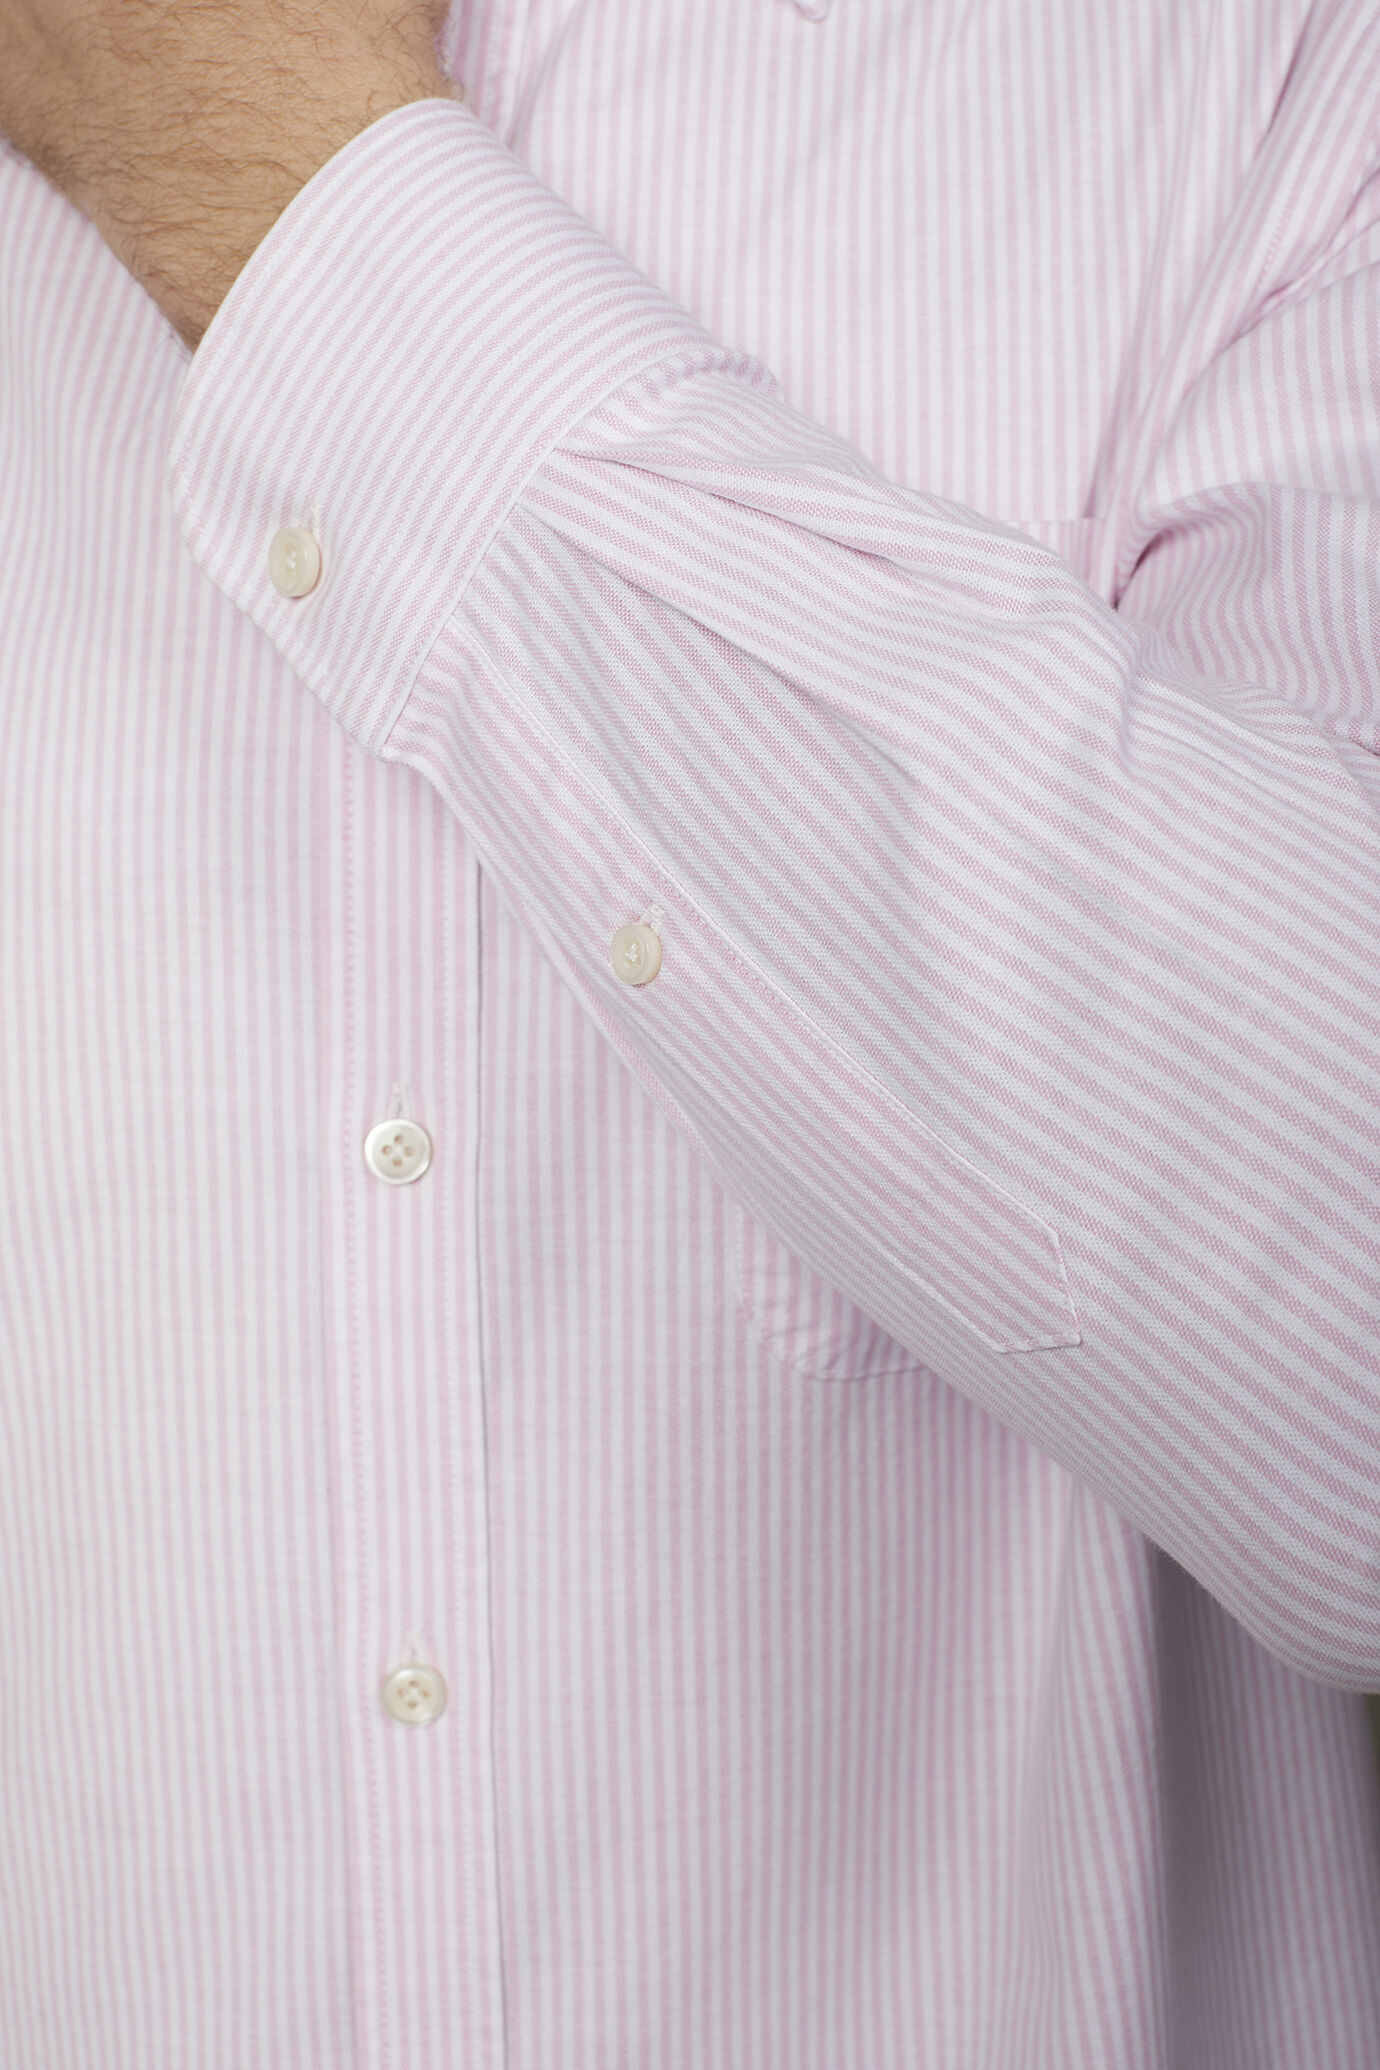 Camicia classica uomo collo button down tessuto Oxford rigato ultra leggero comfort fit image number 4